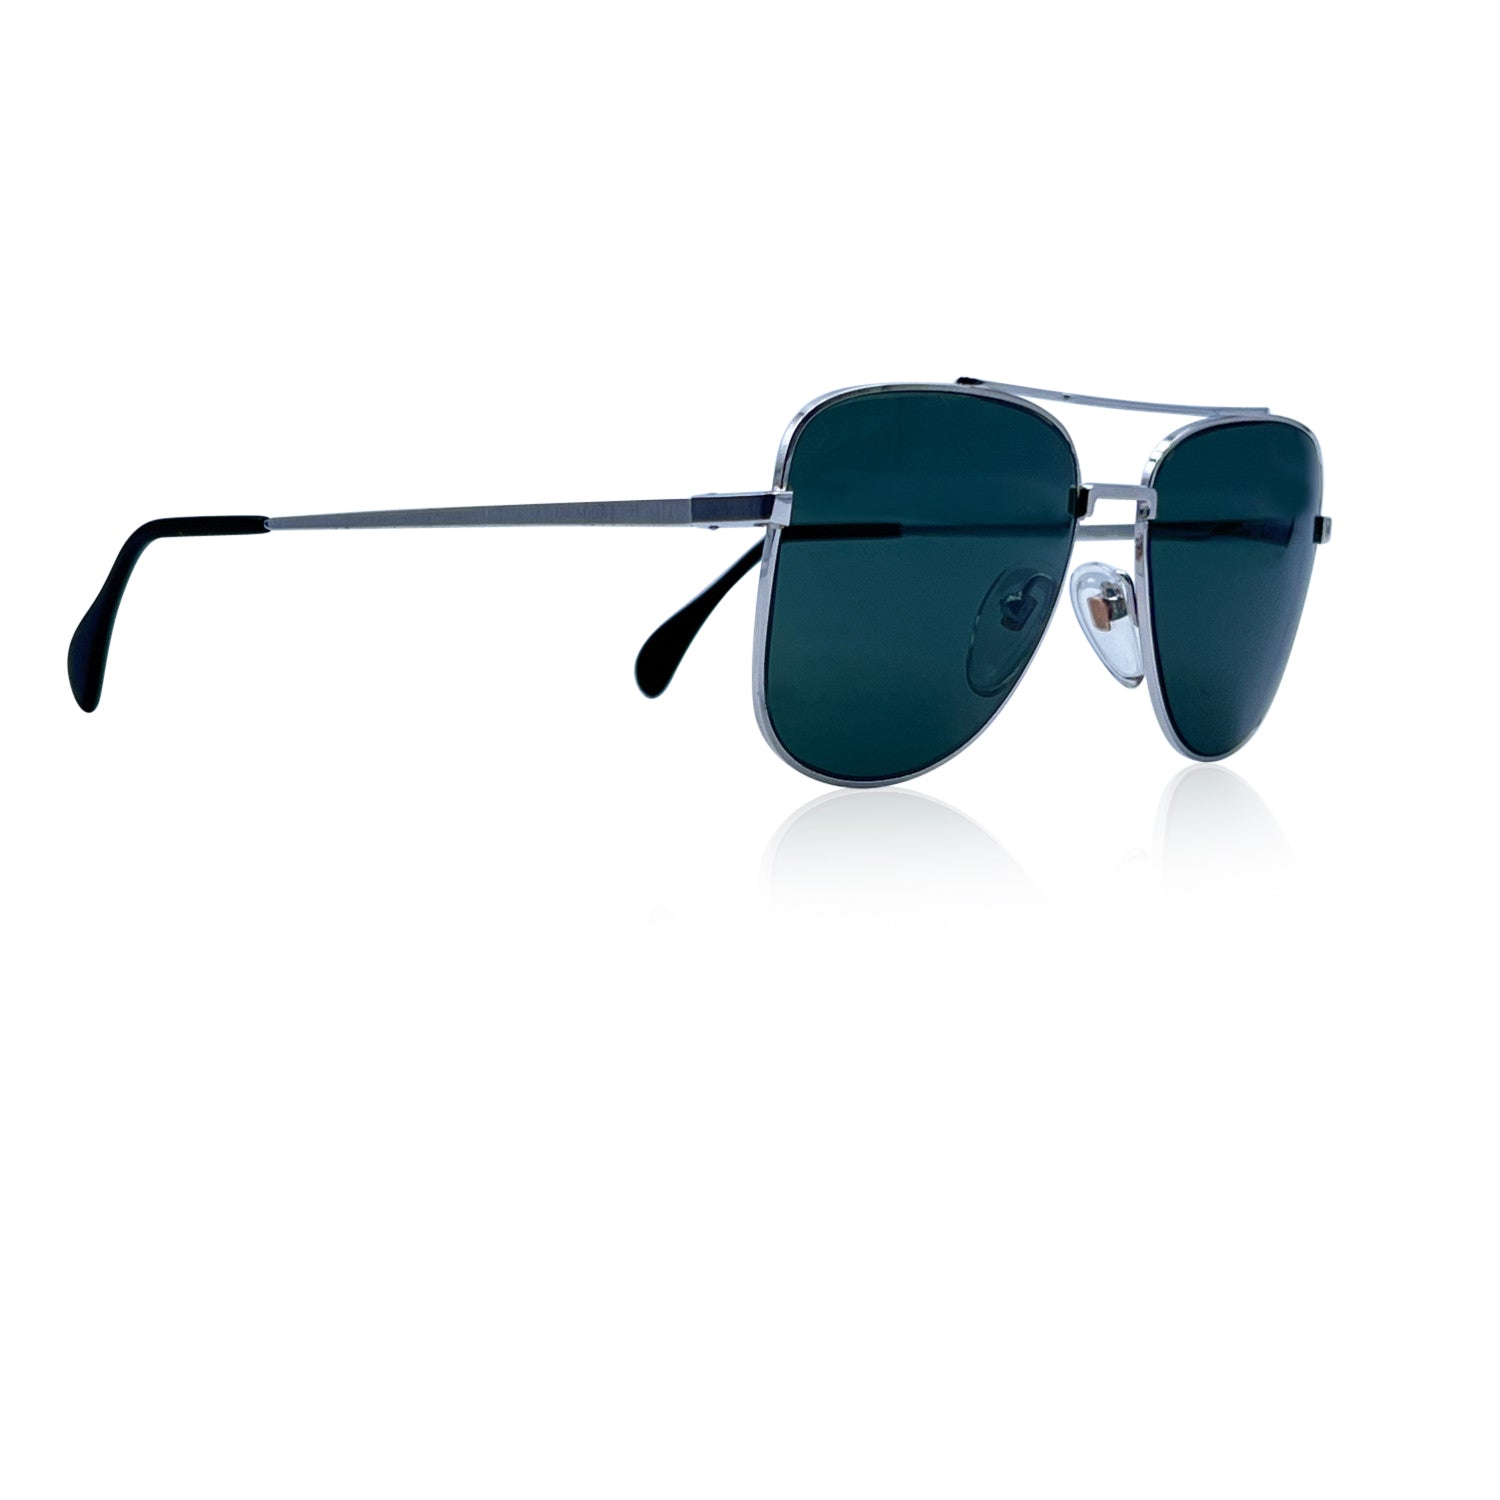 BAUSCH & LOMB U.S.A Sunglasses 519